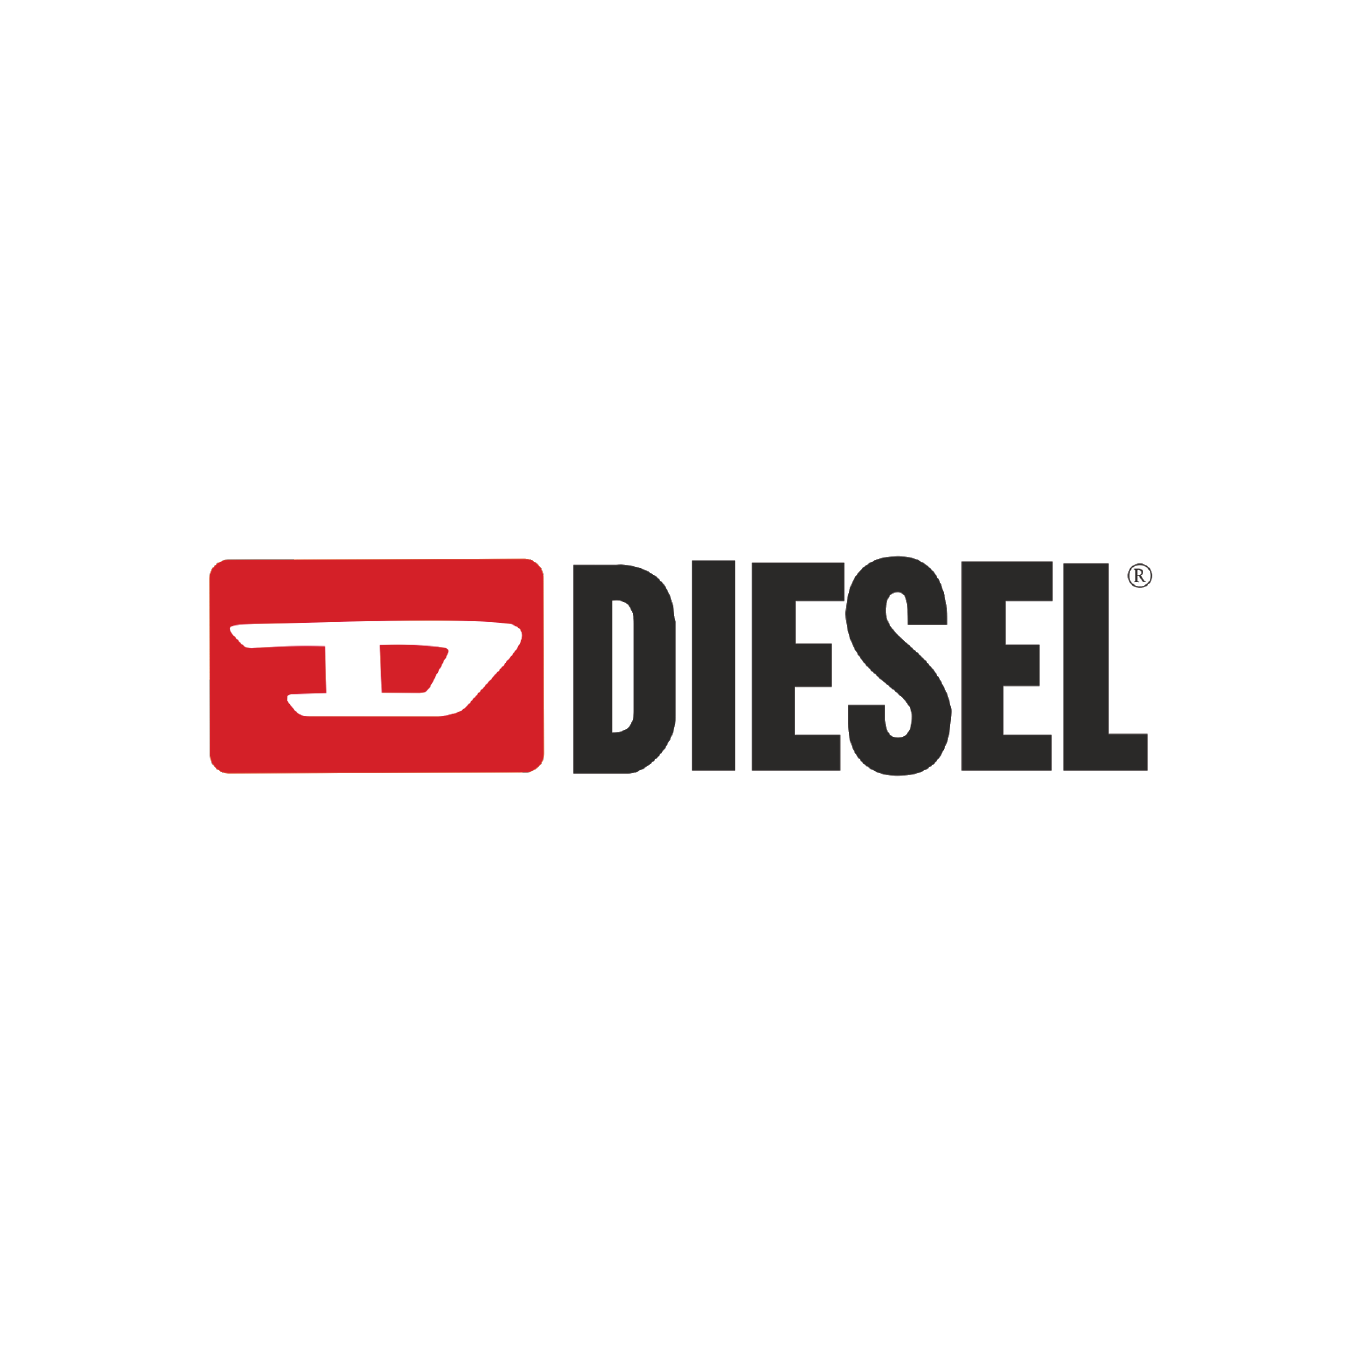 diesel_logo.png